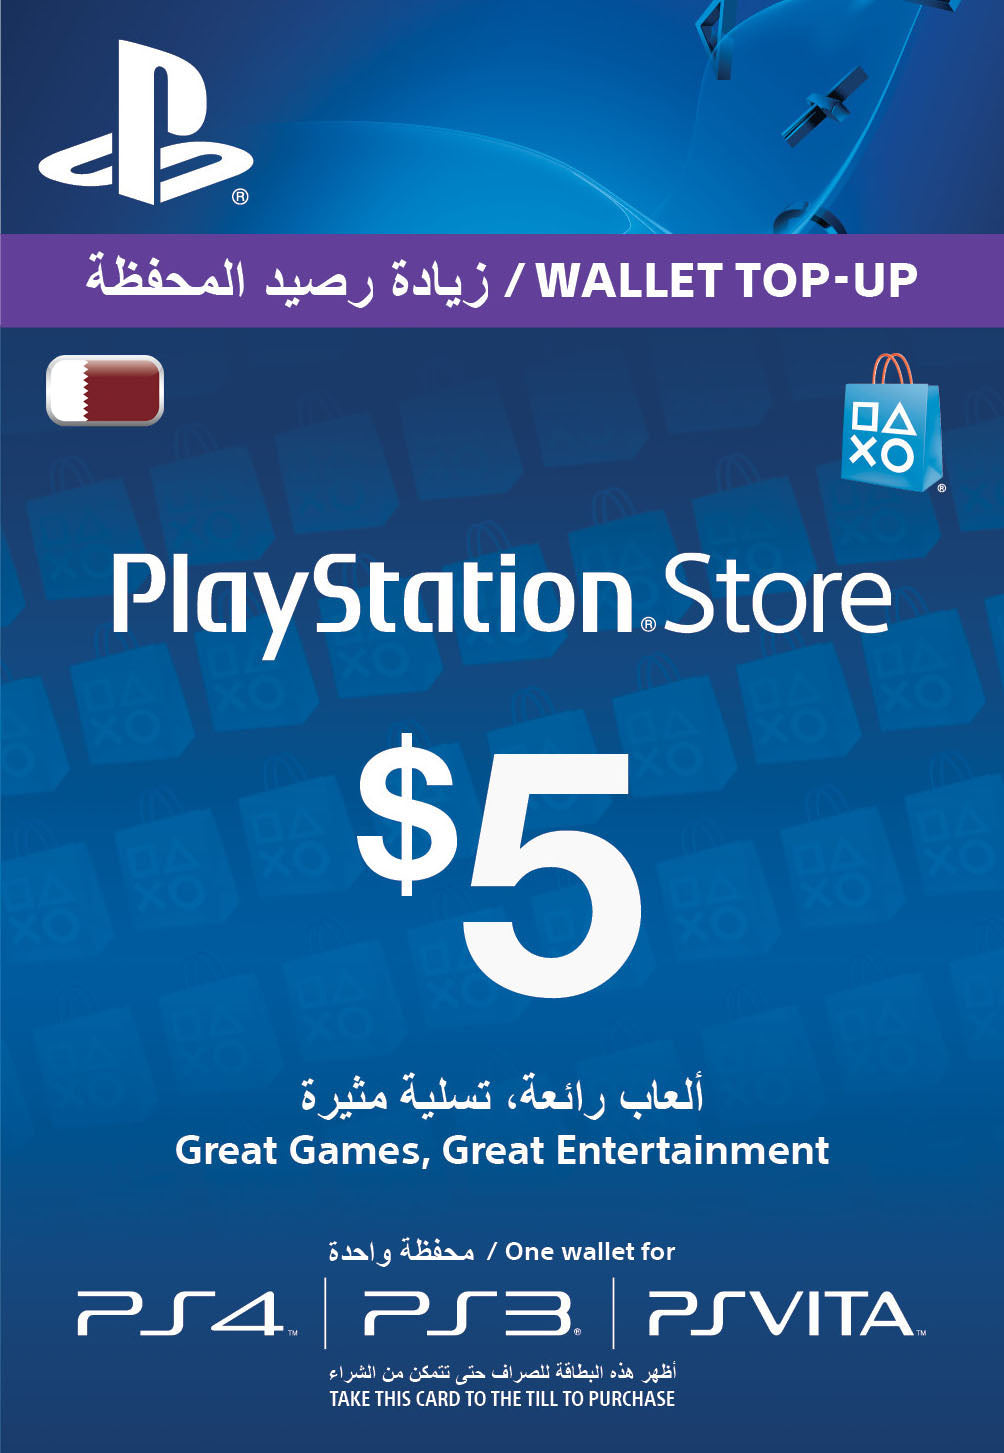 Buy PlayStation Network Digital Card $5 Online in Doha Qatar